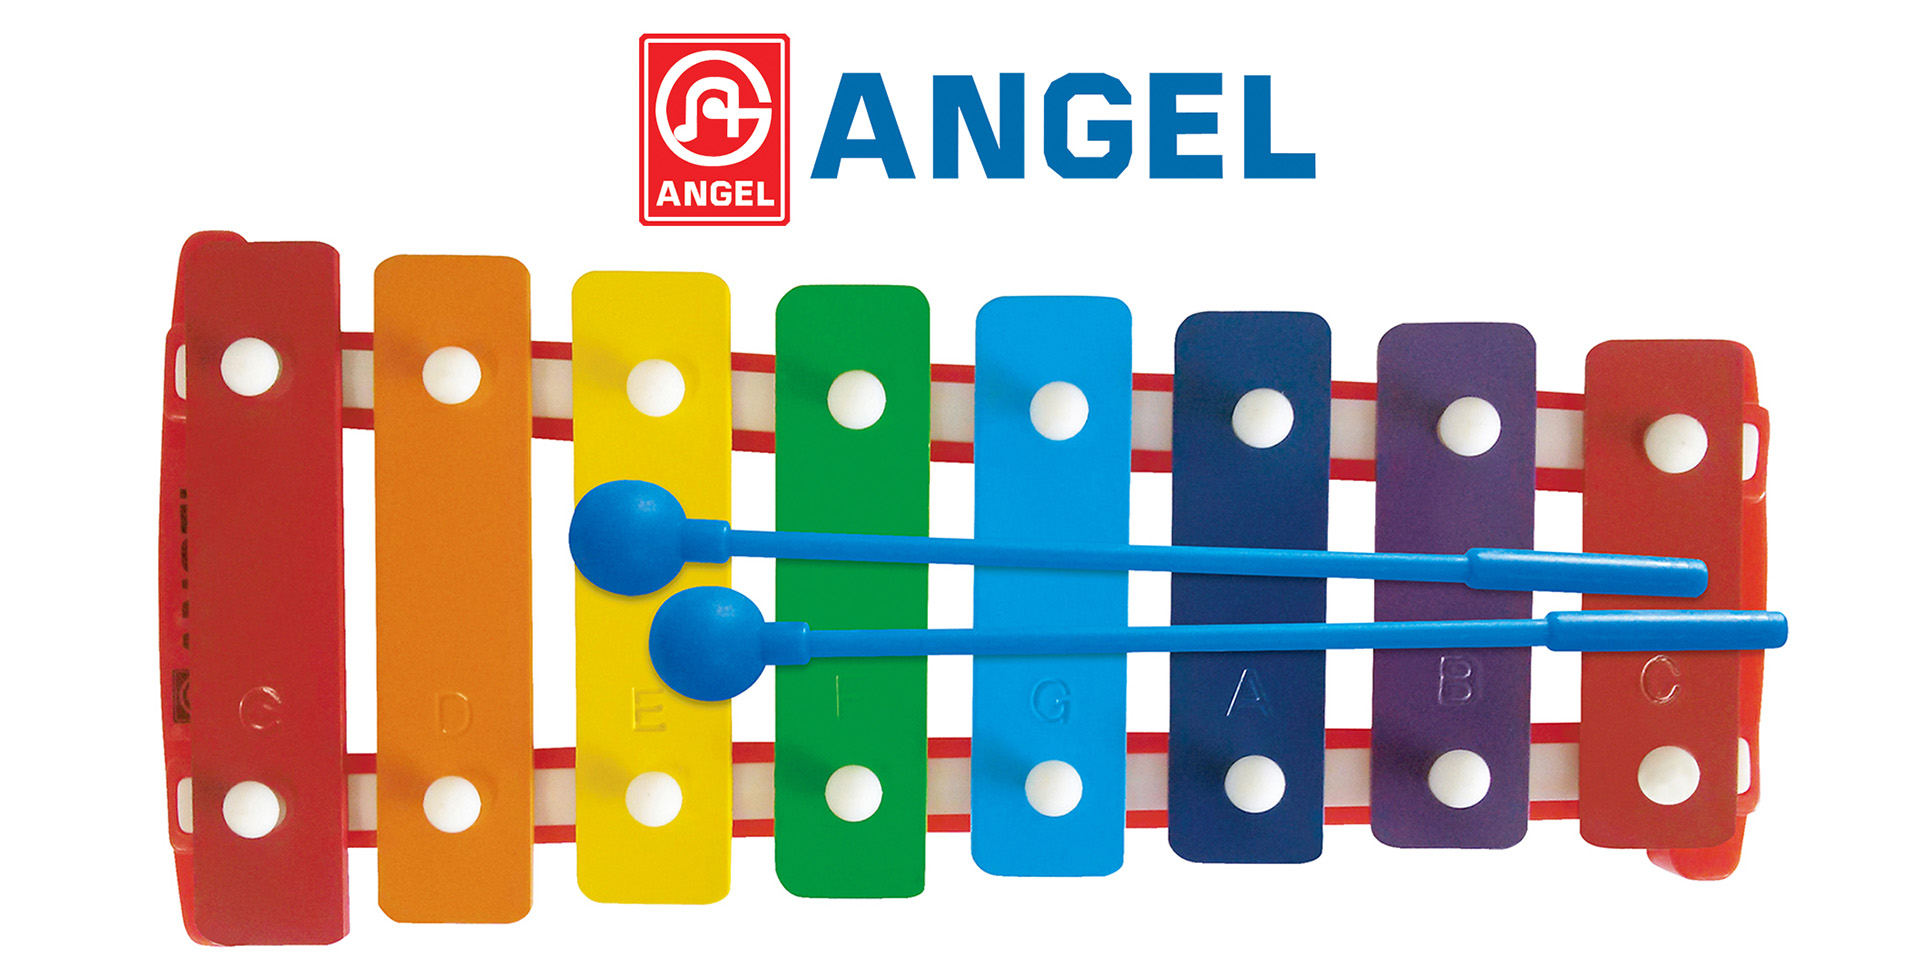 ANGEL_xylophone